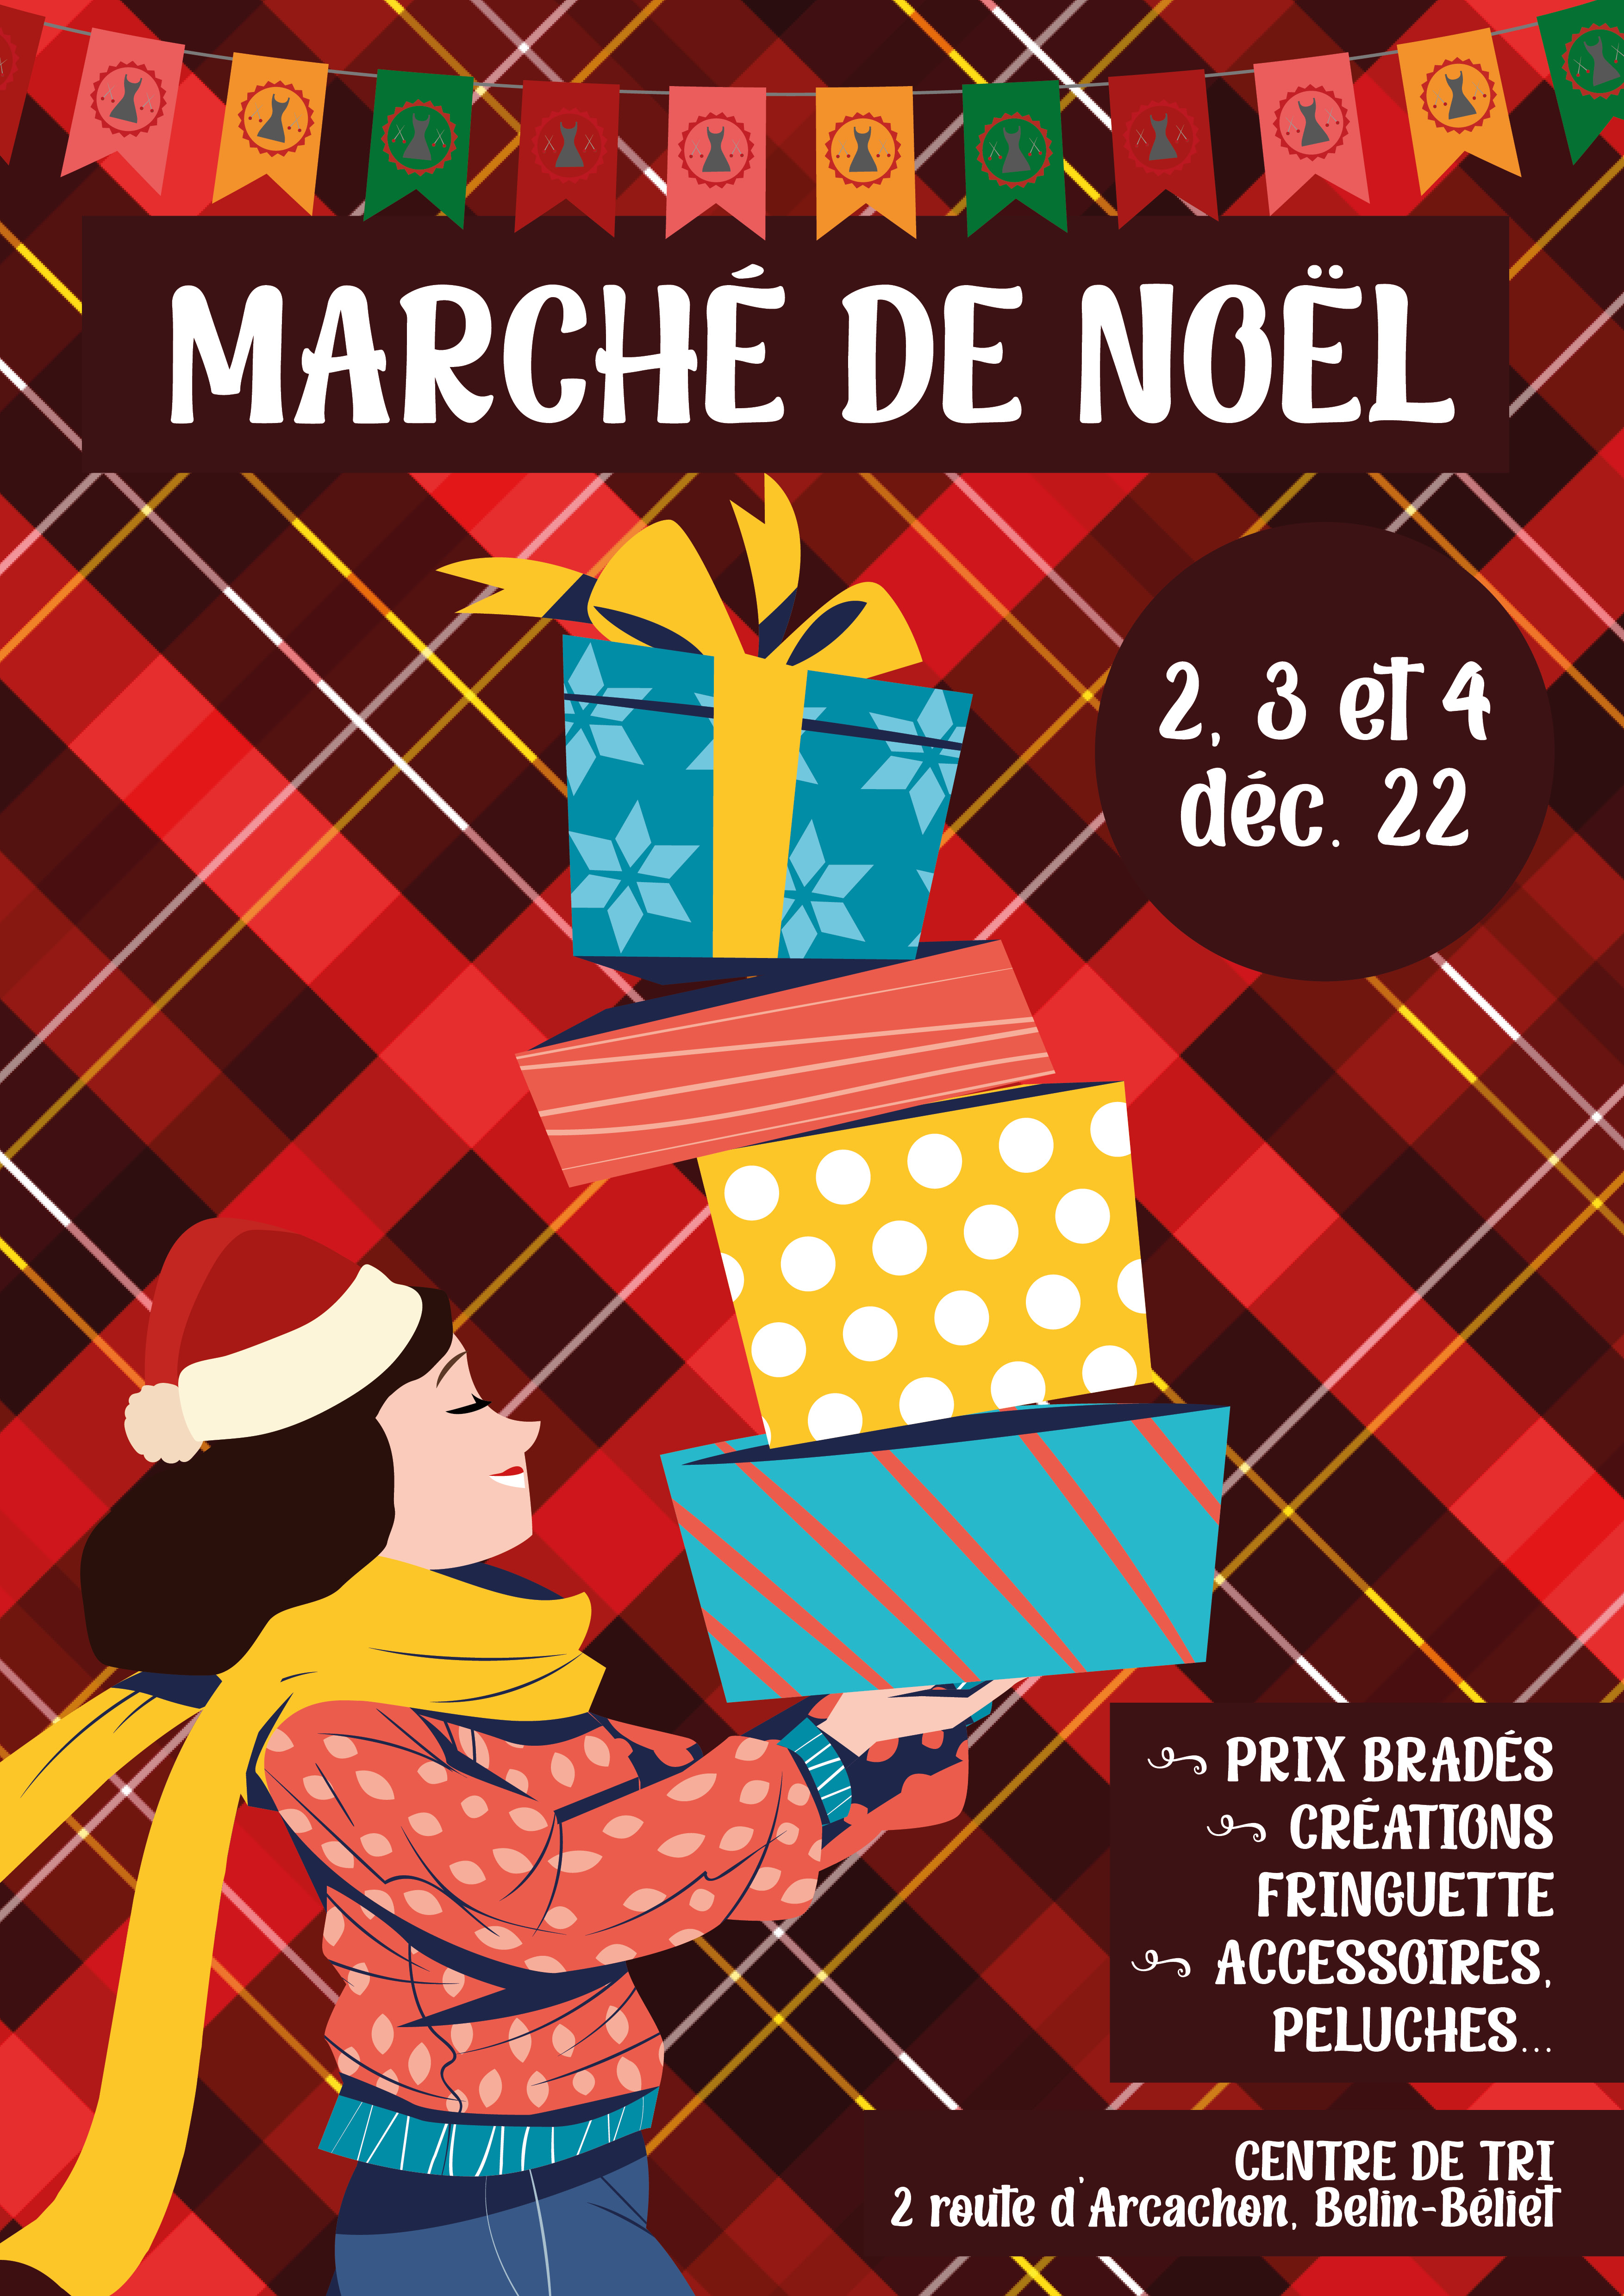 2, 3 et 4 décembre 2022 : Marché de Noël de Fringuette